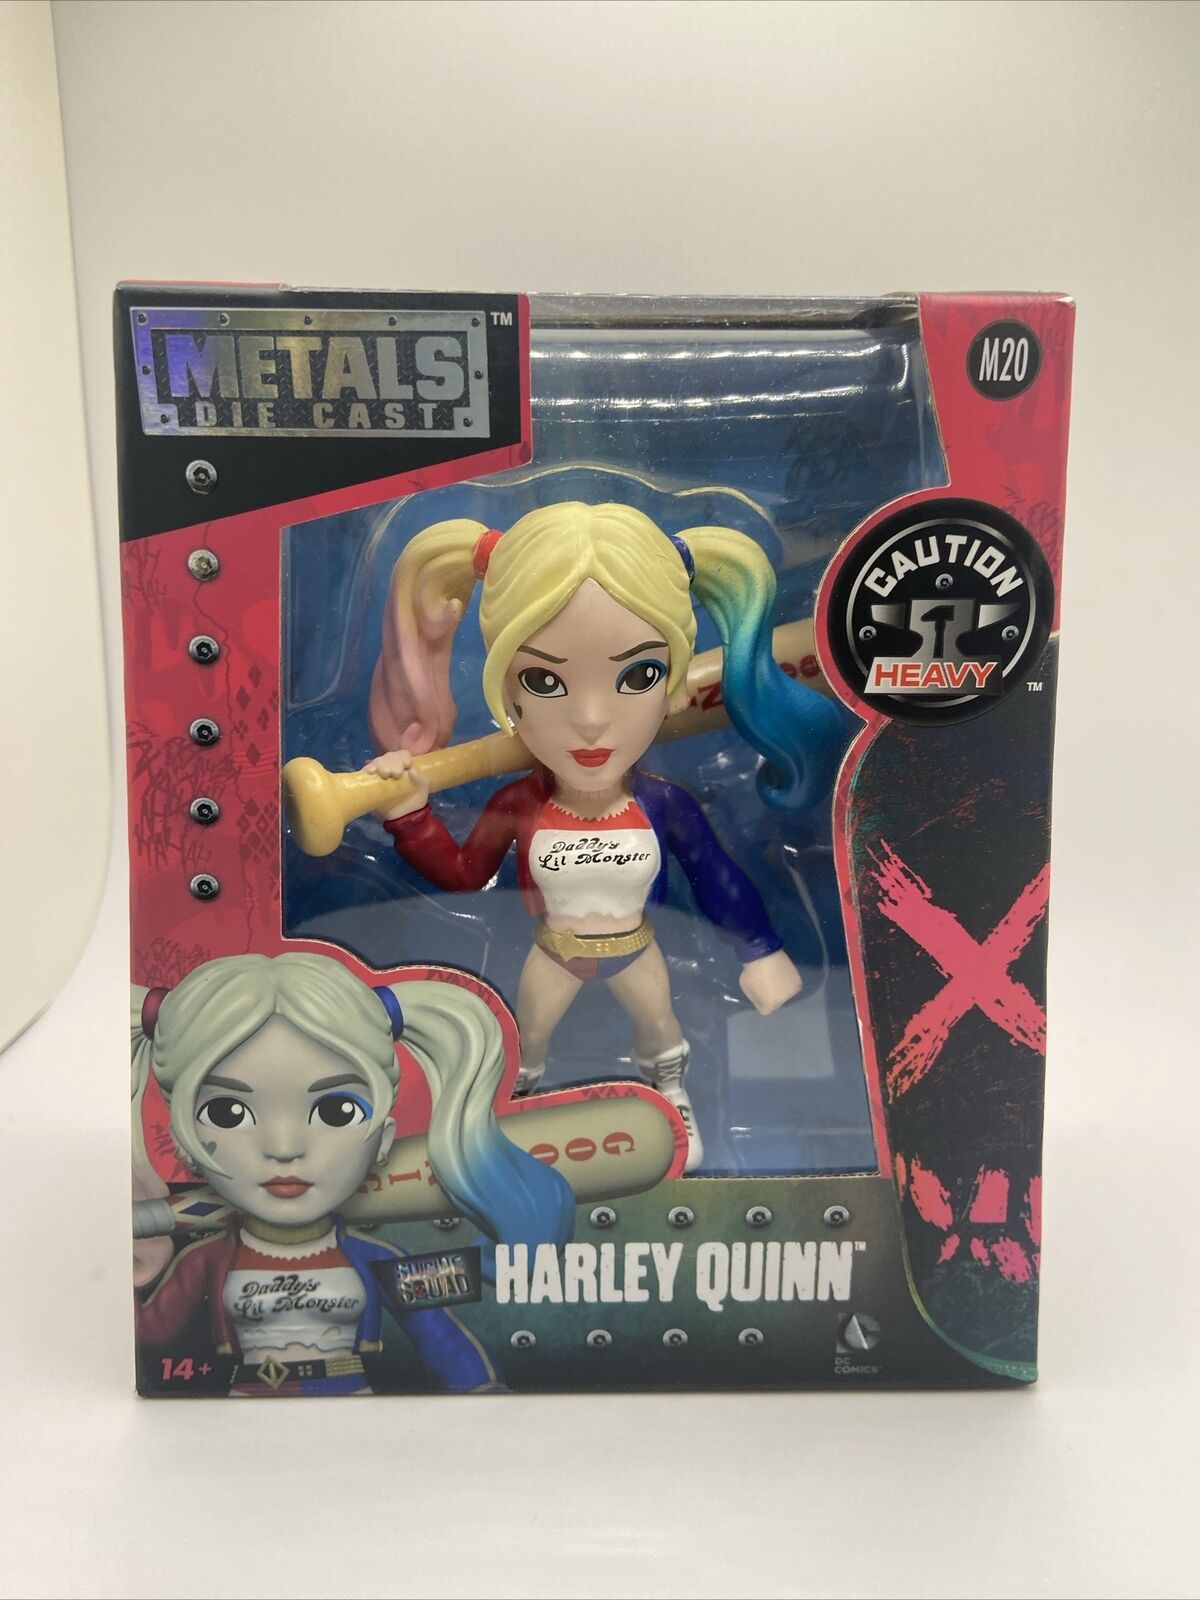 Harley Quinn Die Cast Metal Figurine M20 NIB Suicide Squad Jada Toys 4" Figure